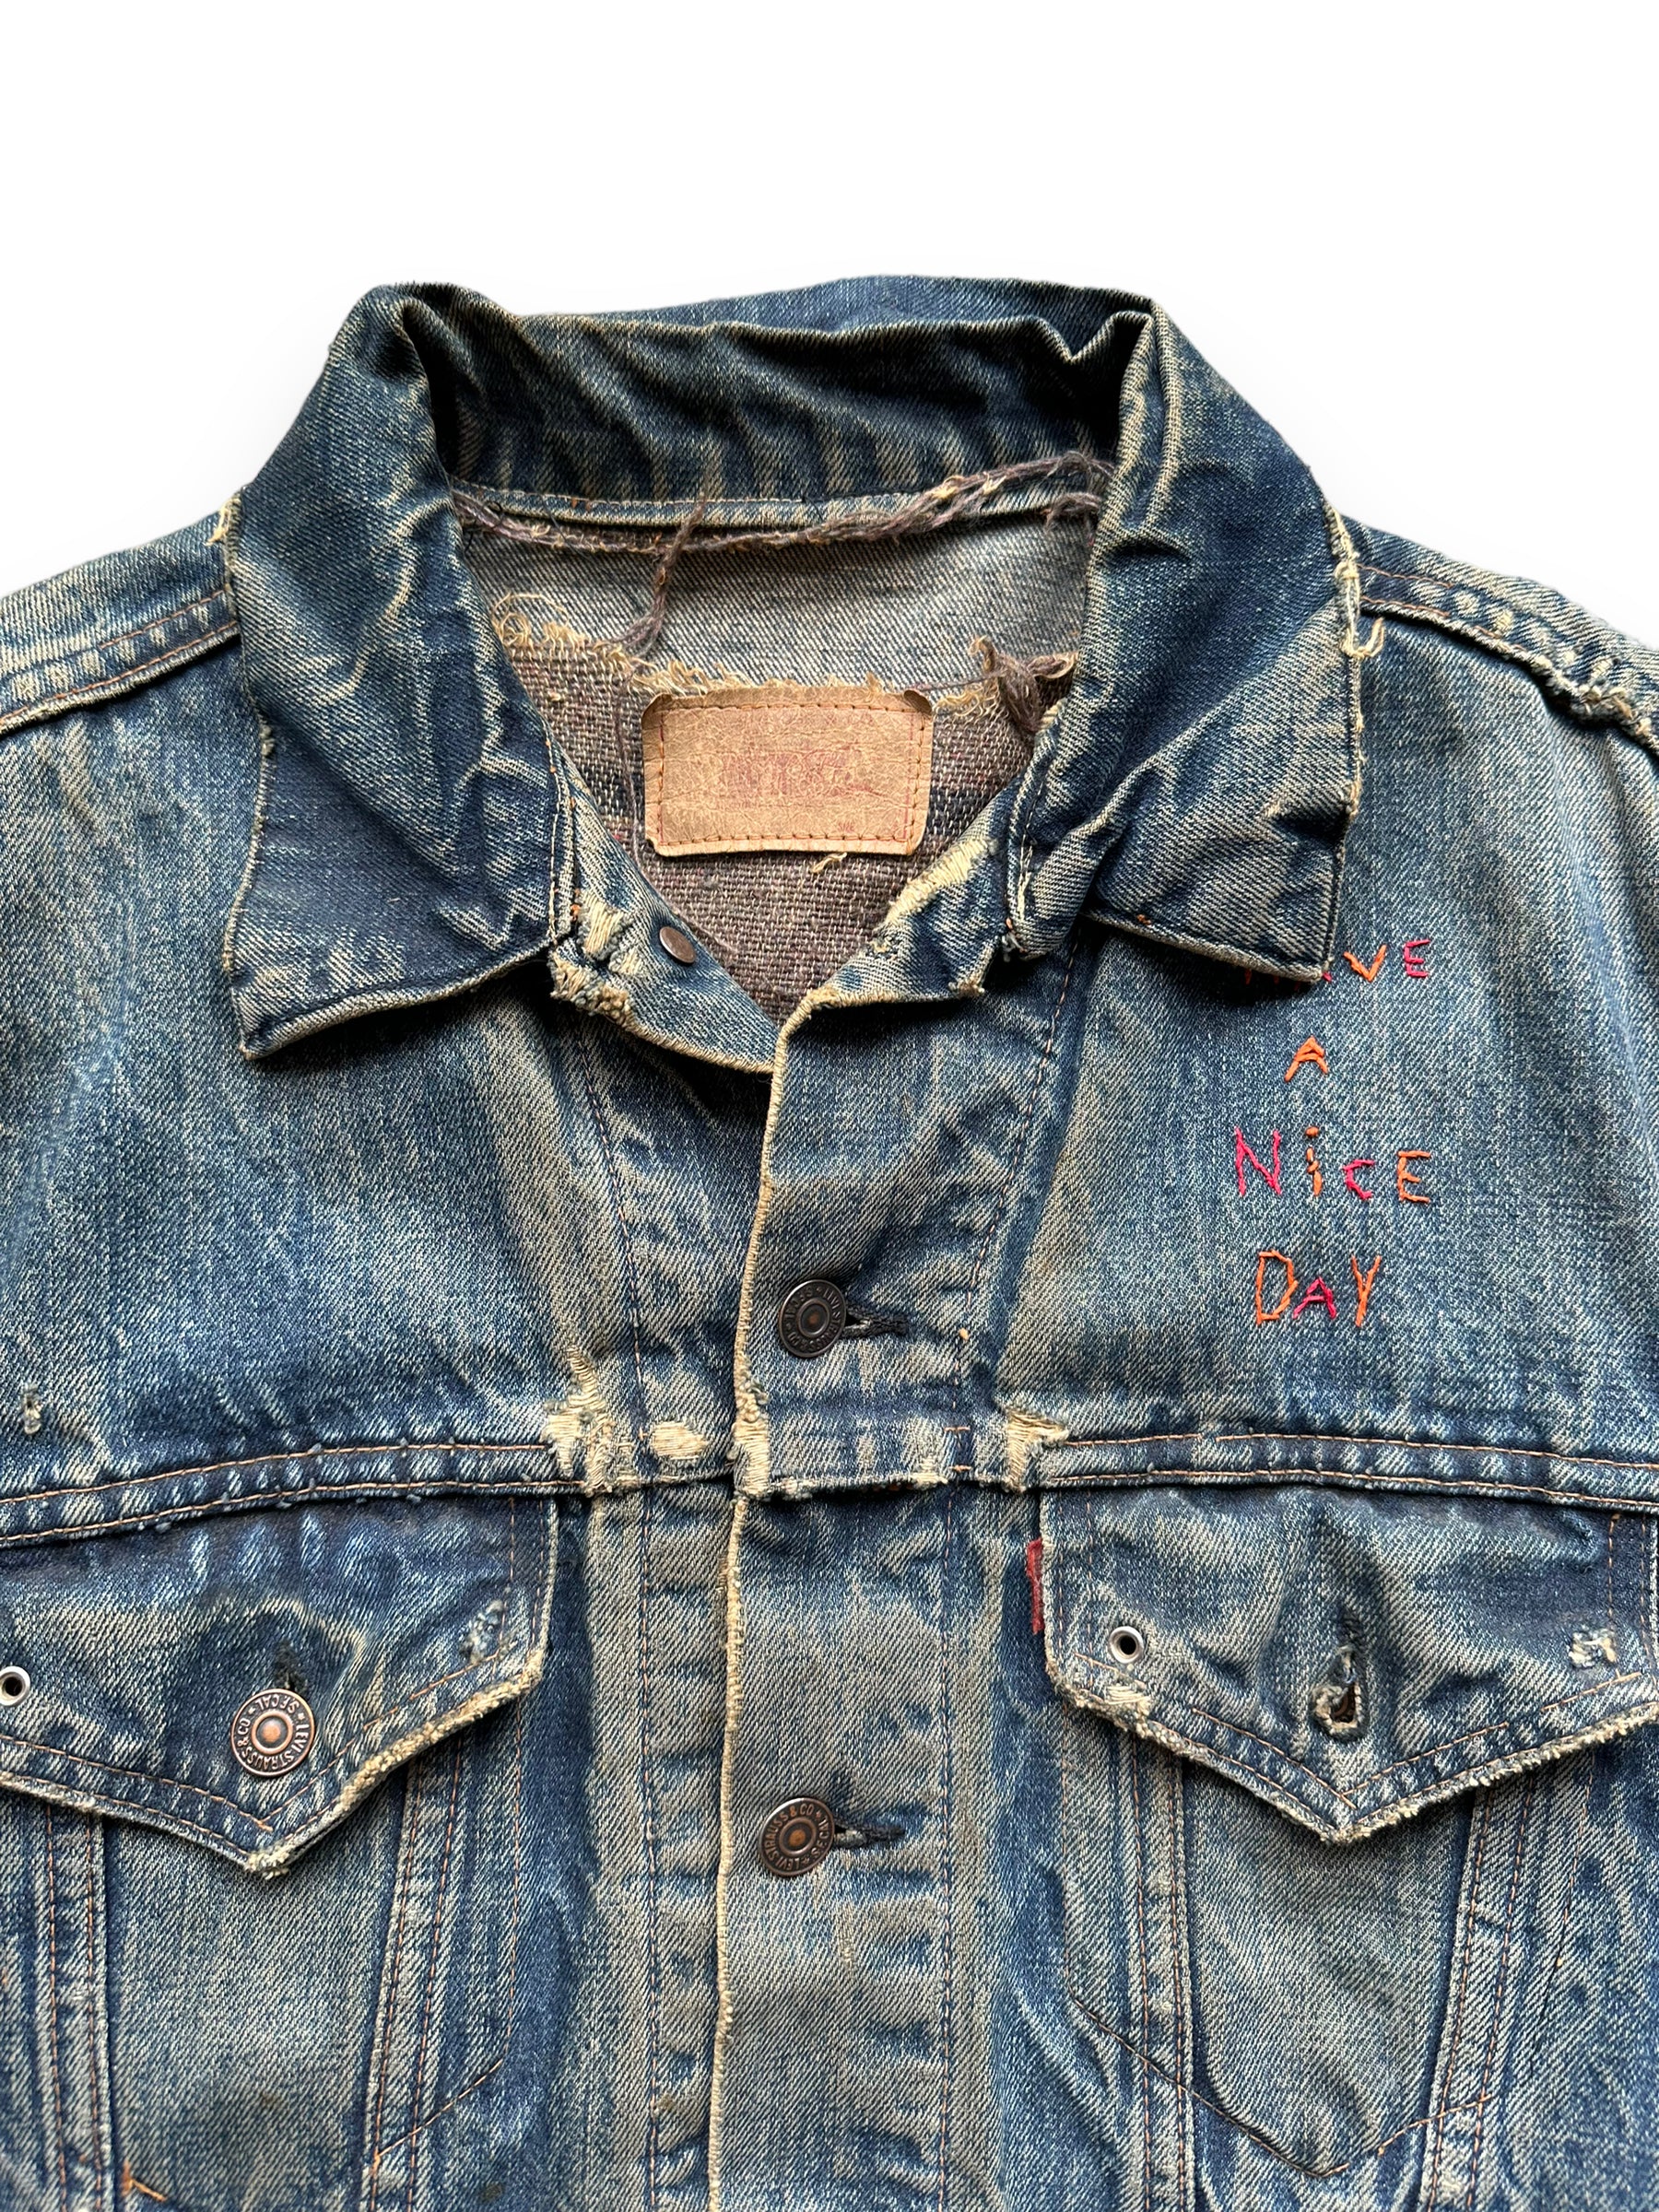 Collar of Levi's Big E Type III Blanket Lined Trucker w/ Butterfly Embroidery SZ 42 | Vintage Denim Workwear Seattle | Seattle Vintage Denim